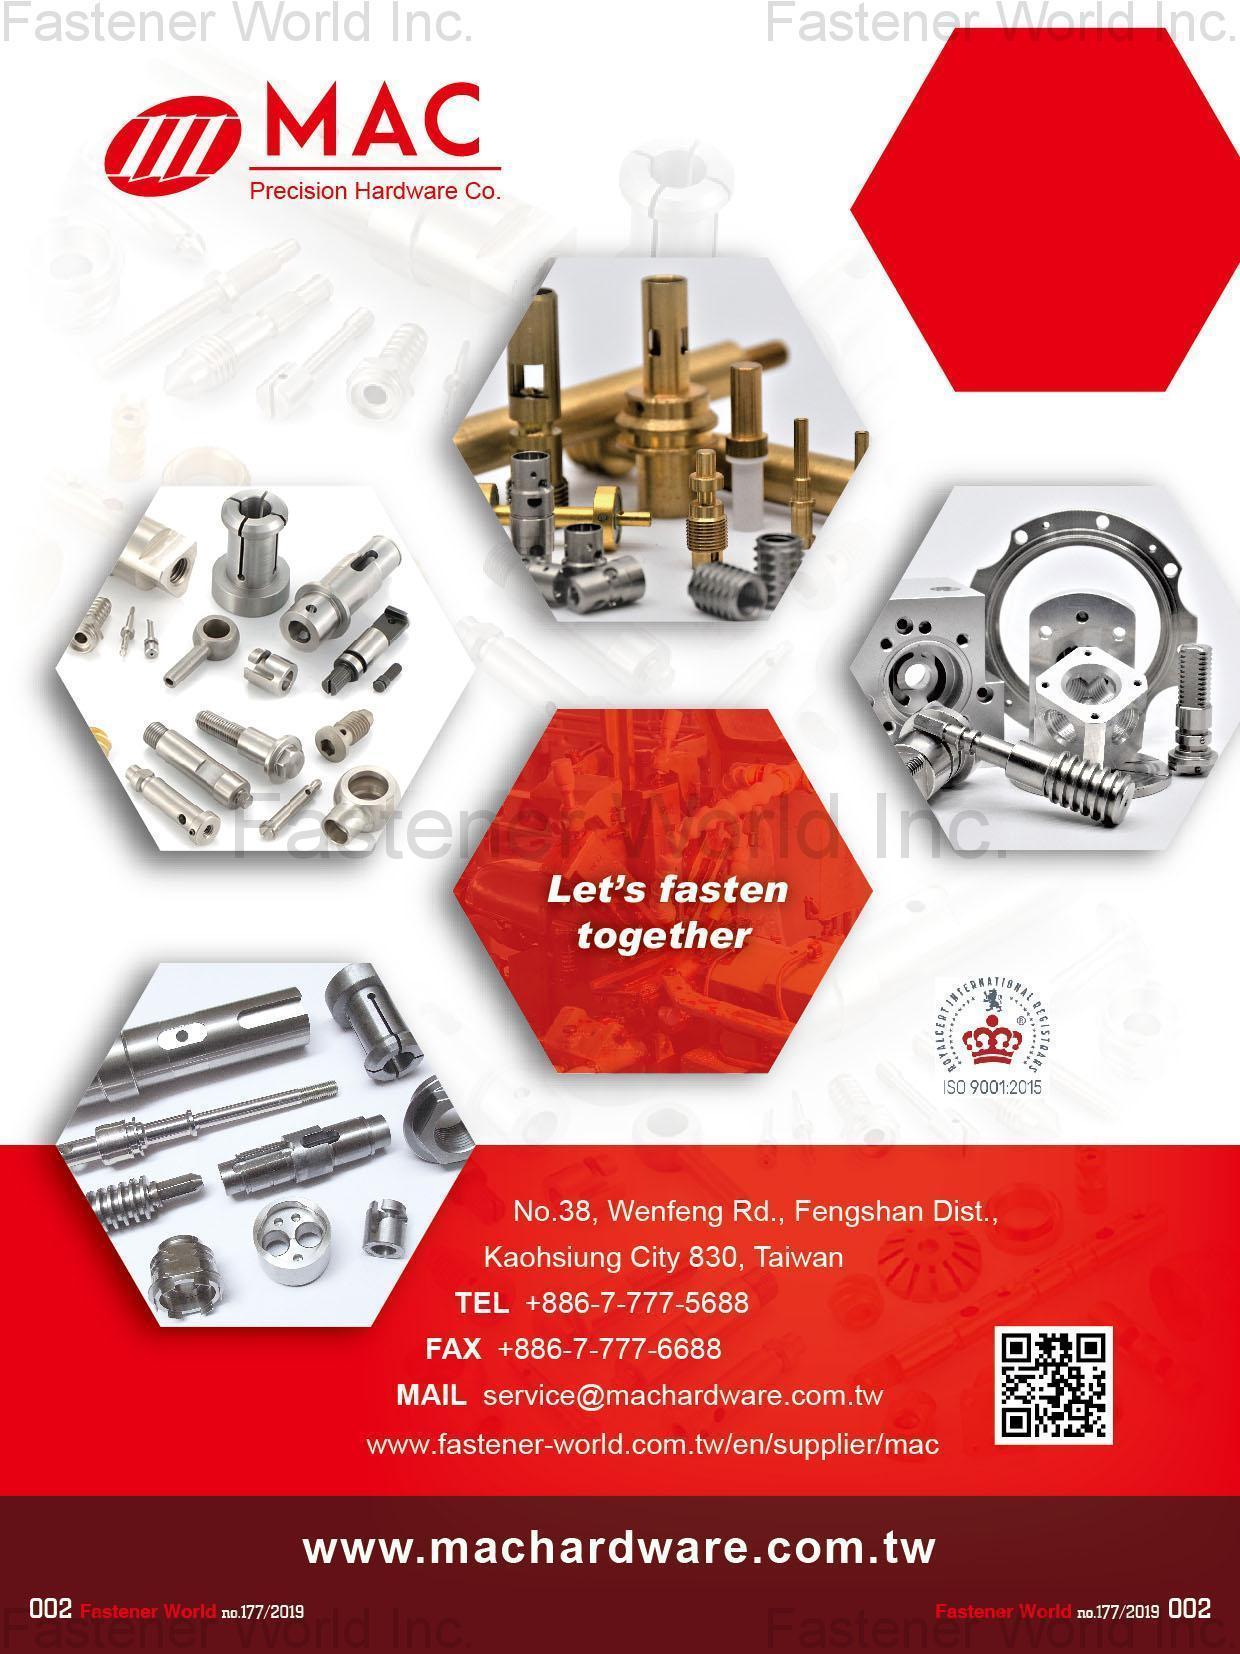 MAC PRECISION HARDWARE CO. , precision CNC parts / Machining parts and related parts , CNC parts, CNC lathe